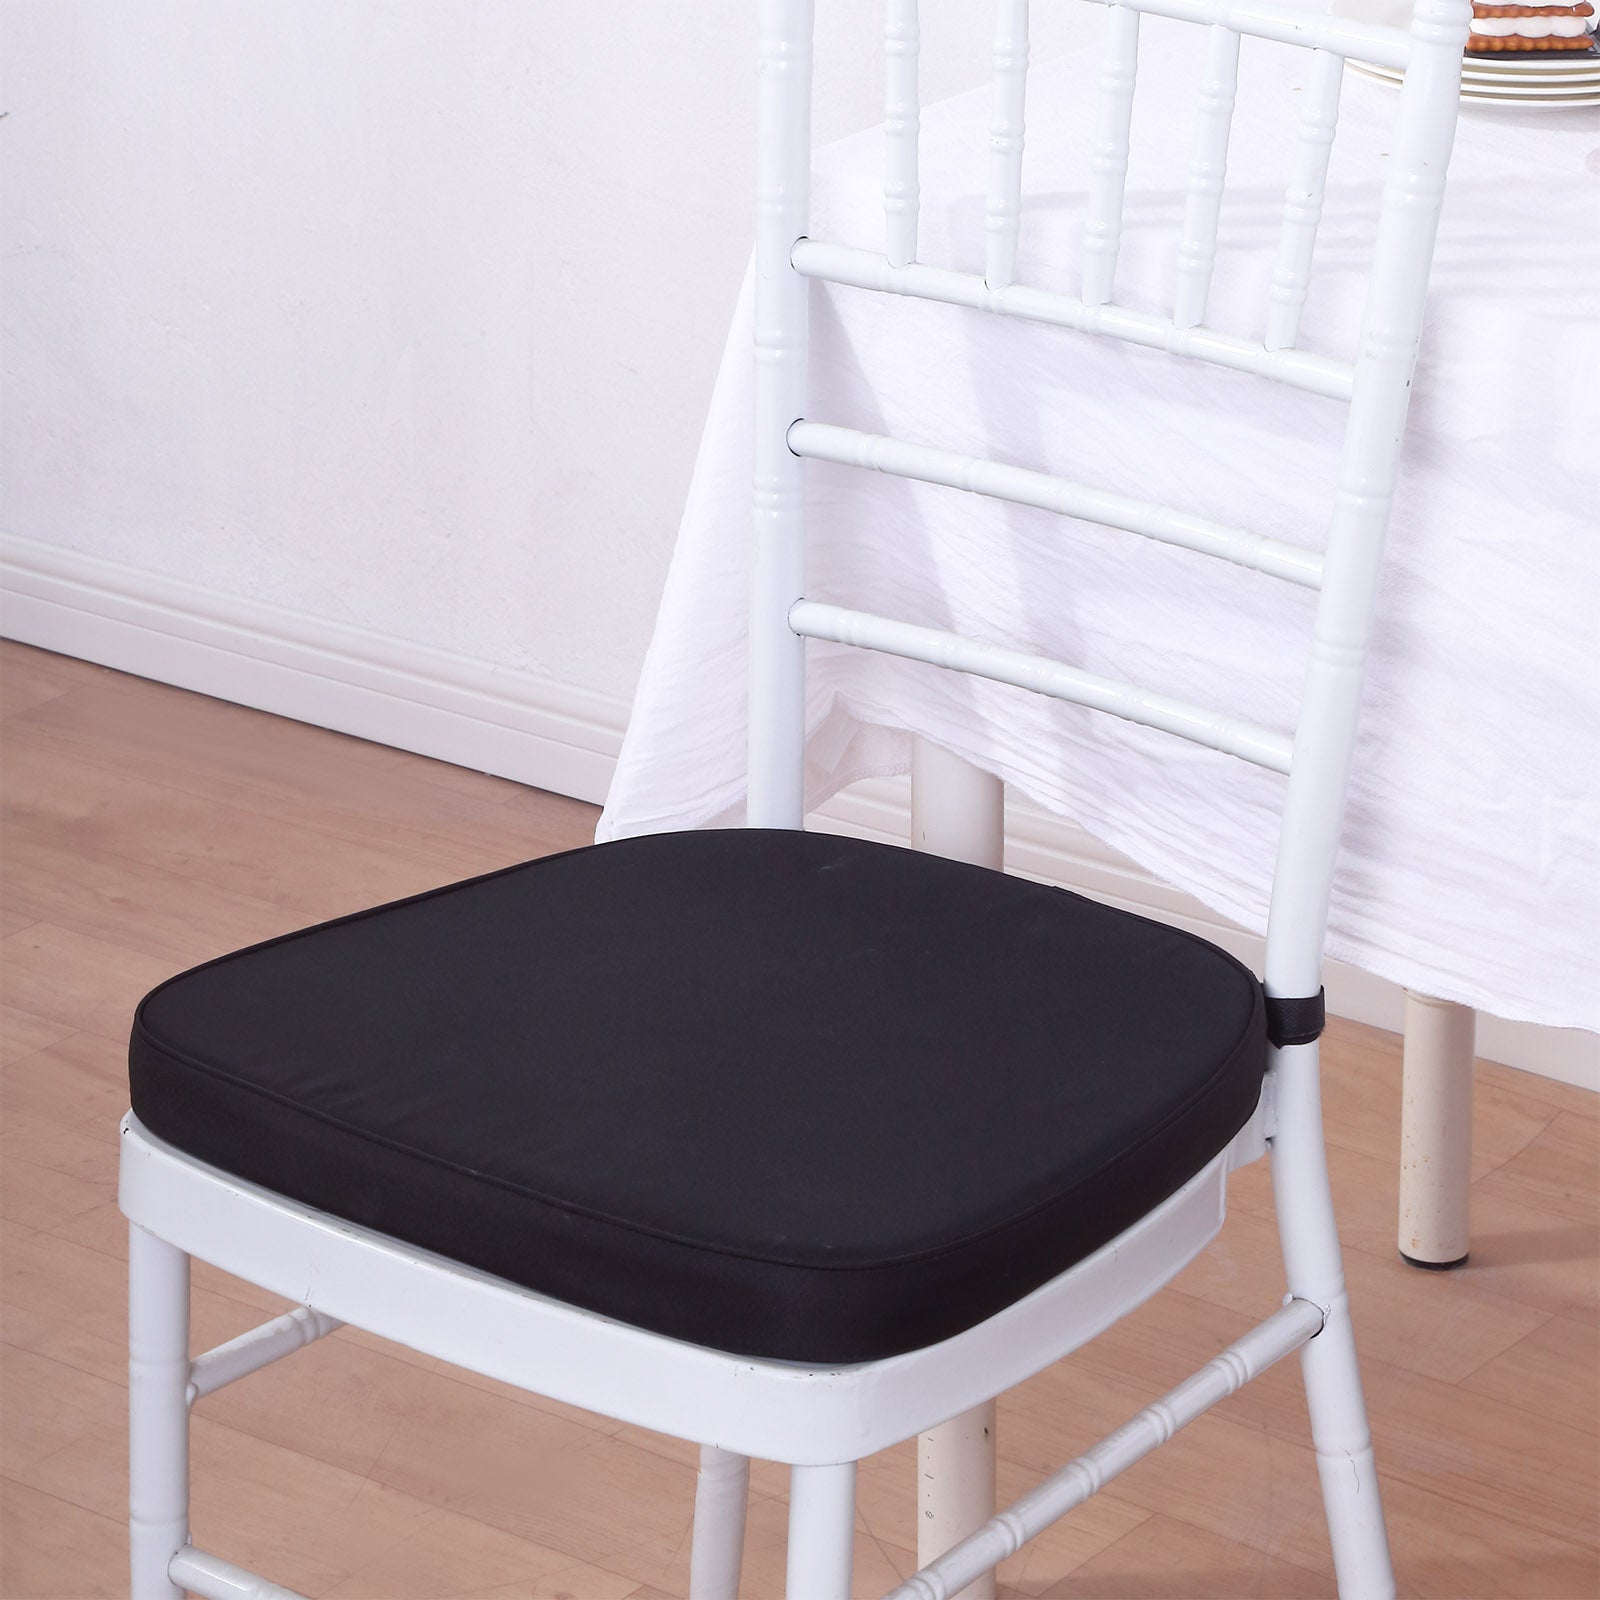 https://tableclothsfactory.com/cdn/shop/files/Thick-Black-Chiavari-Chair-Pad.jpg?v=1690810960